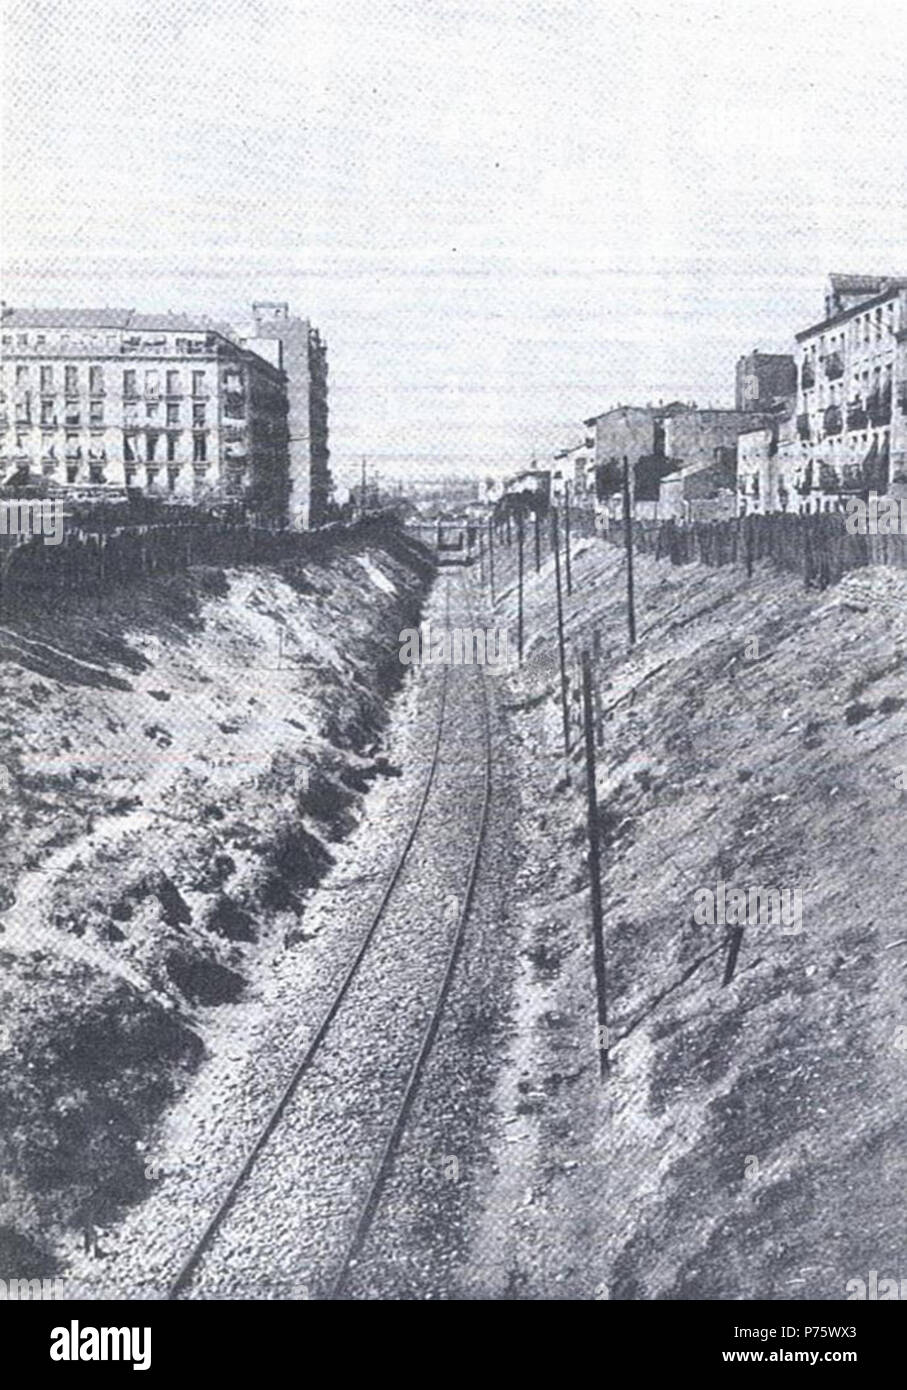 Español: Vista de la trinchera de la calle del Ferrocarril de Madrid en 1912. Por ella circulaba el ferrocarril de contorno . 1912 12 Calle del Ferrocarril (Madrid) en 1912 Stock Photo